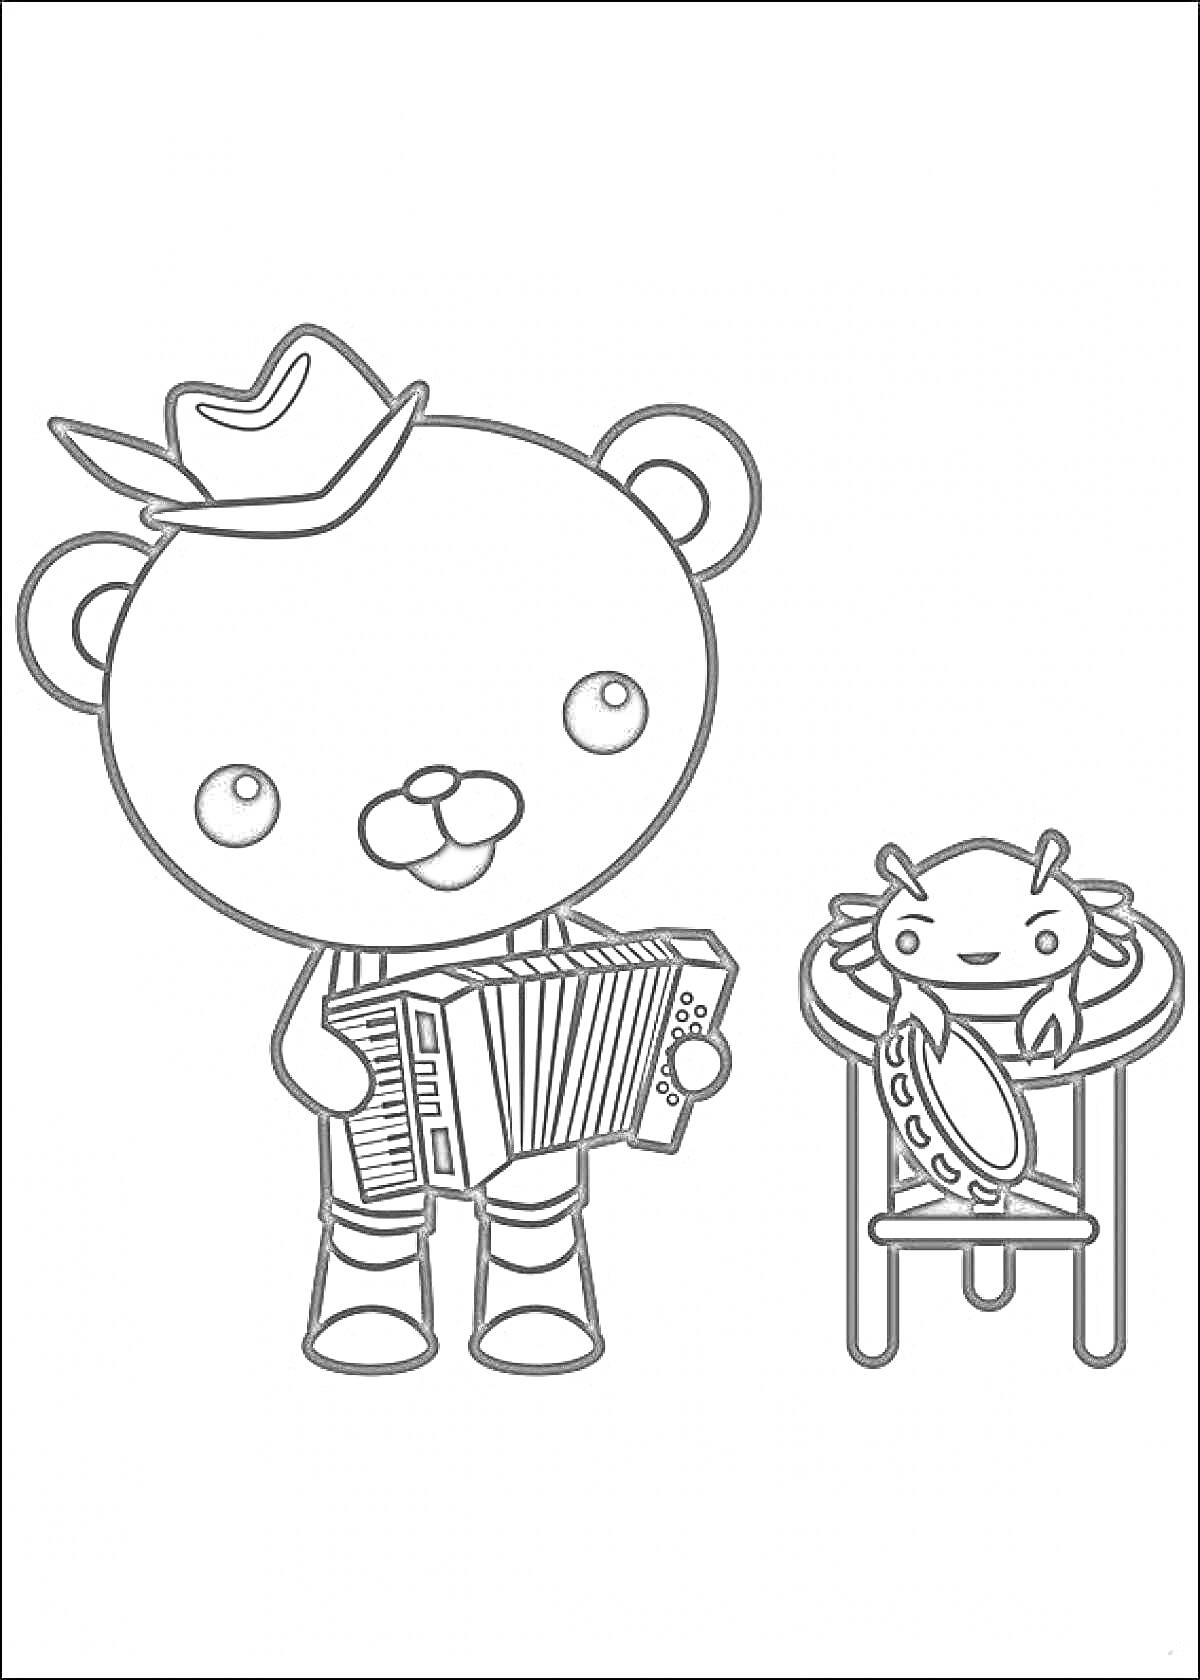 Раскраска Медведь в шляпе с аккордеоном и краб на табурете с бубном